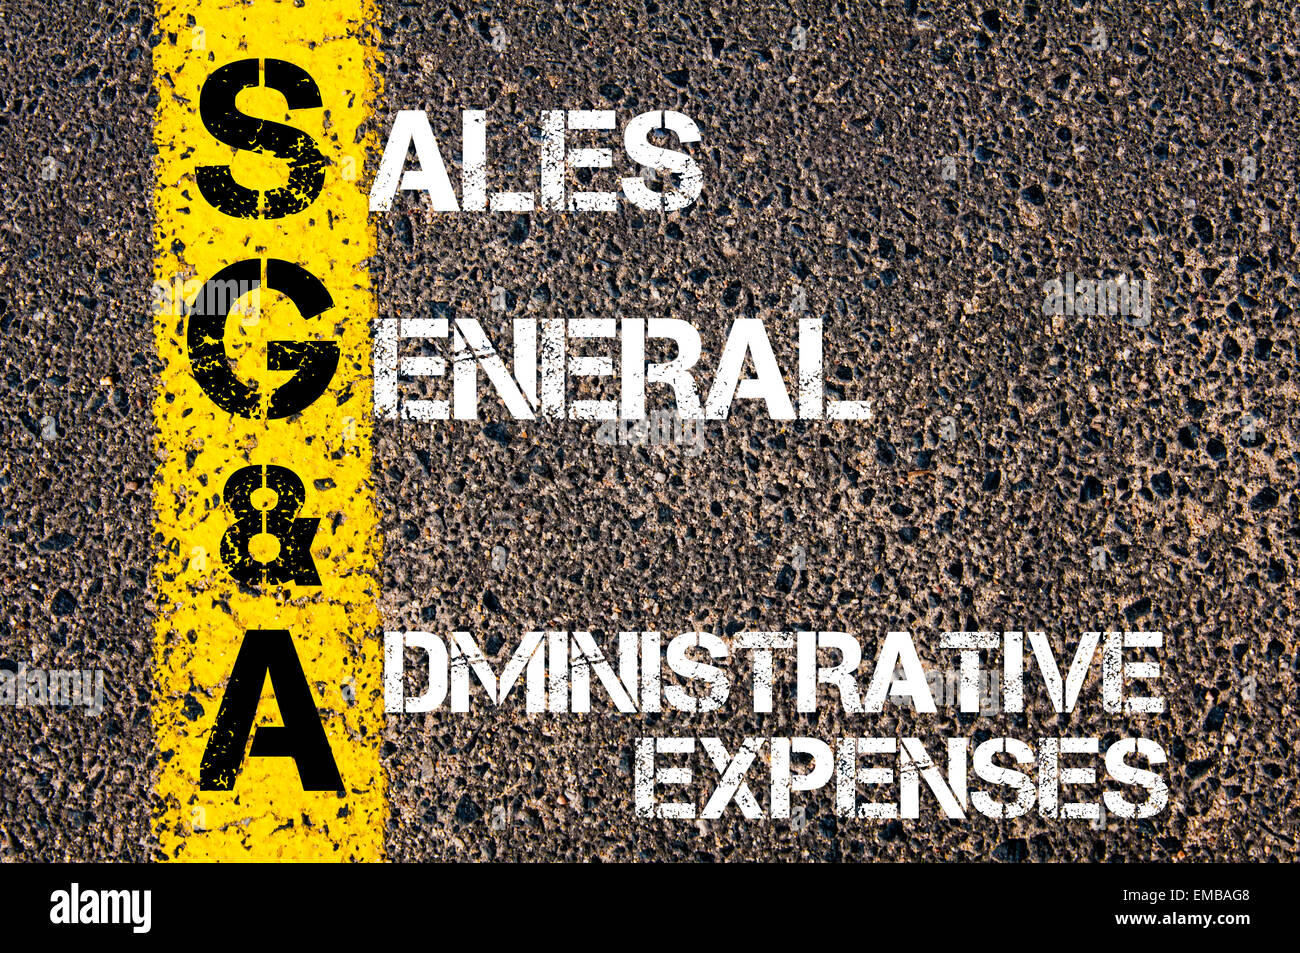 Acronimo di Business SGA come vendite le spese generali e amministrative. Vernice gialla linea sulla strada contro lo sfondo di asfalto. Immagine concettuale Foto Stock